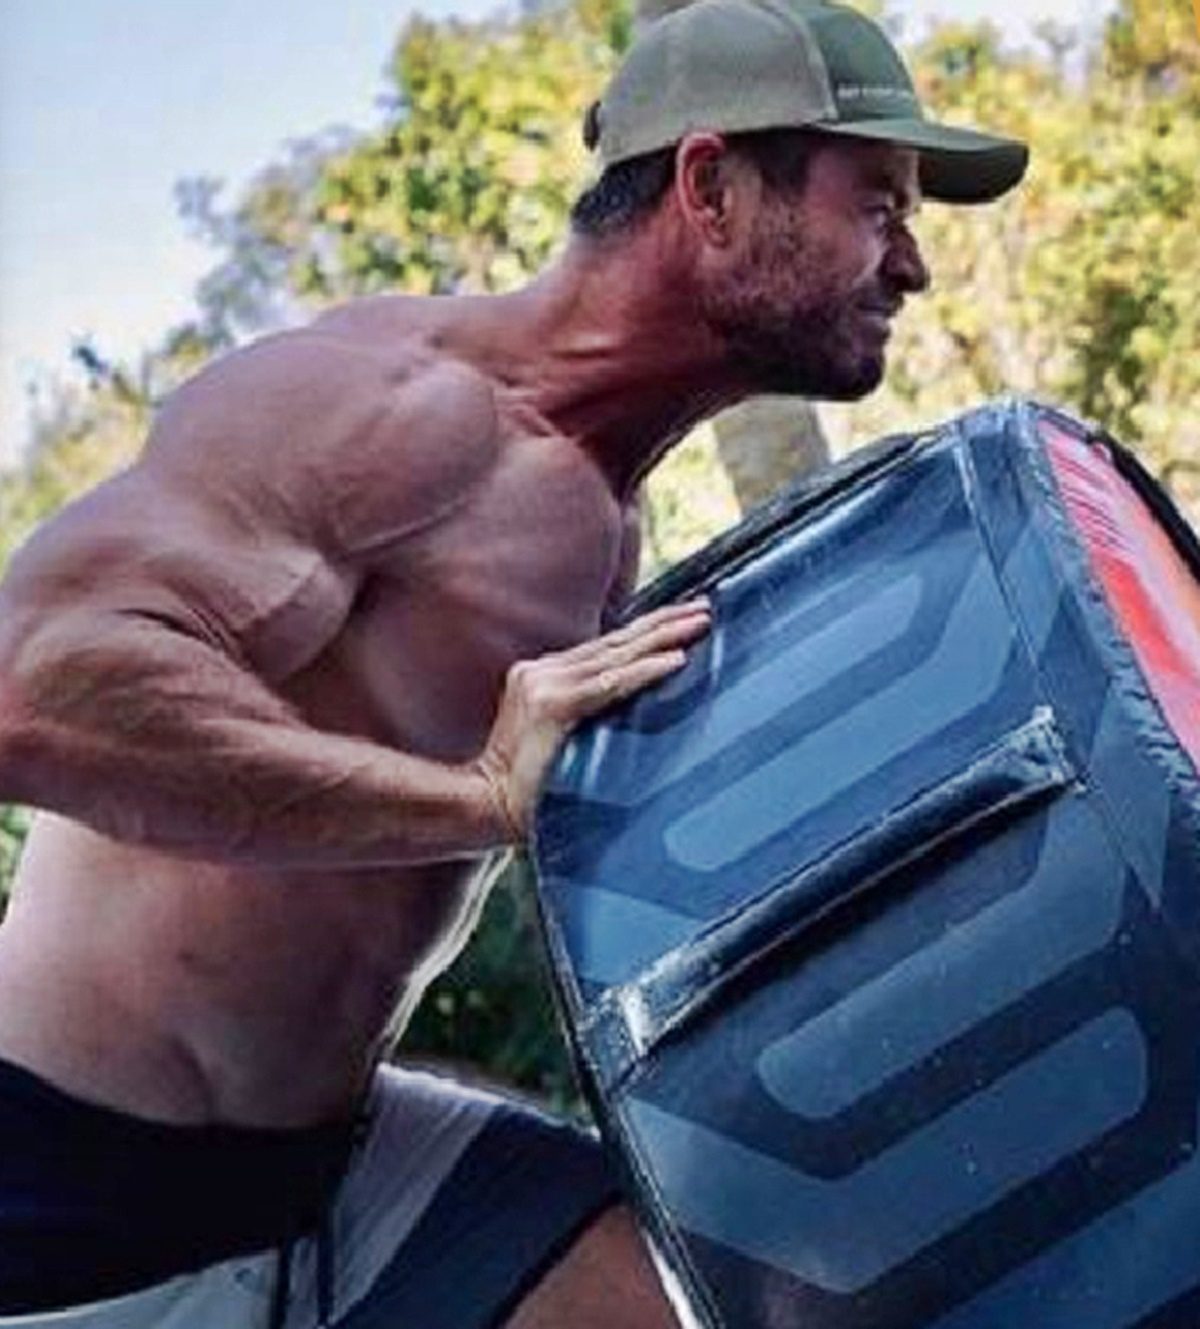 Egy valóságos izomkolosszussá gyúrta magát Chris Hemsworth Hulk Hogan szerepére